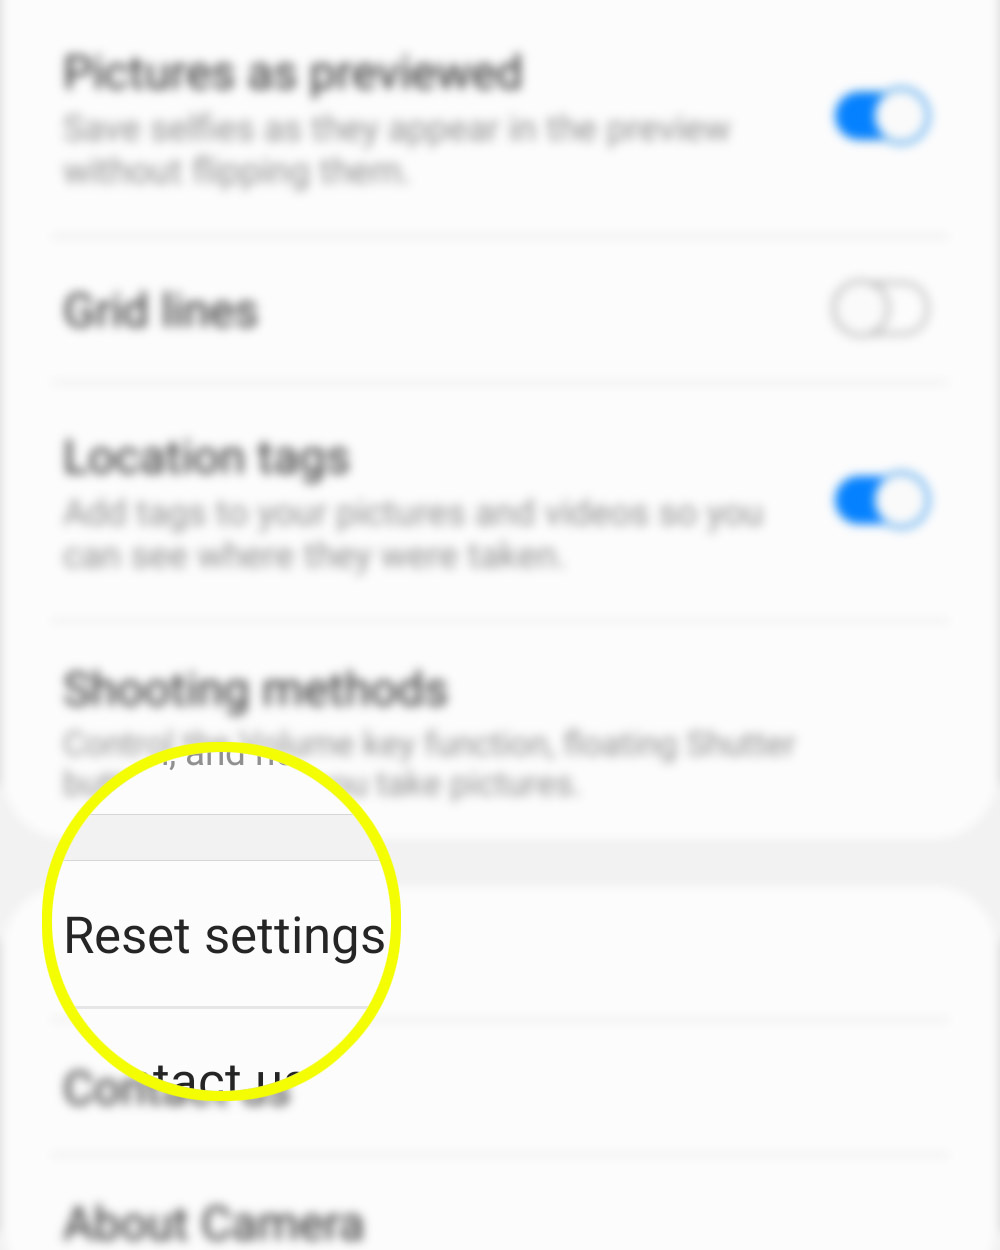 reset restore default camera settings galaxy s20 - reset settings